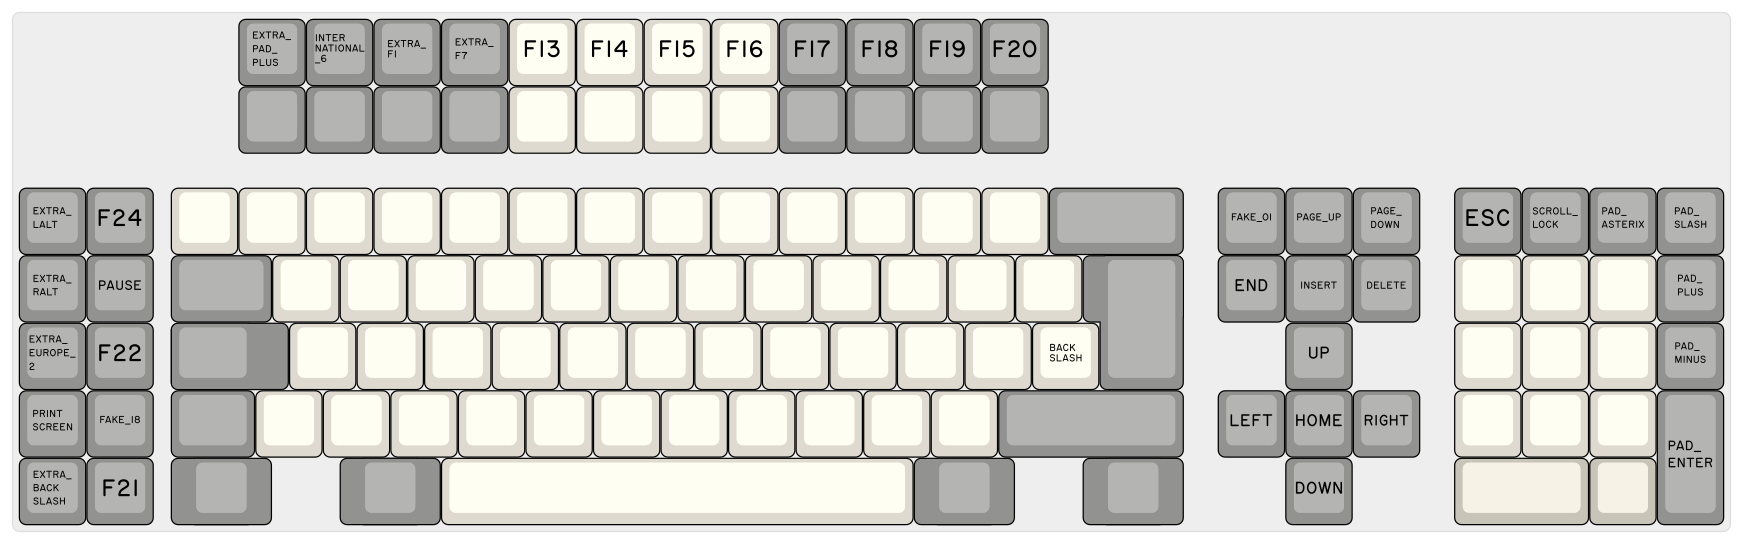 9-keyboard-layout-122-soarer-names.png